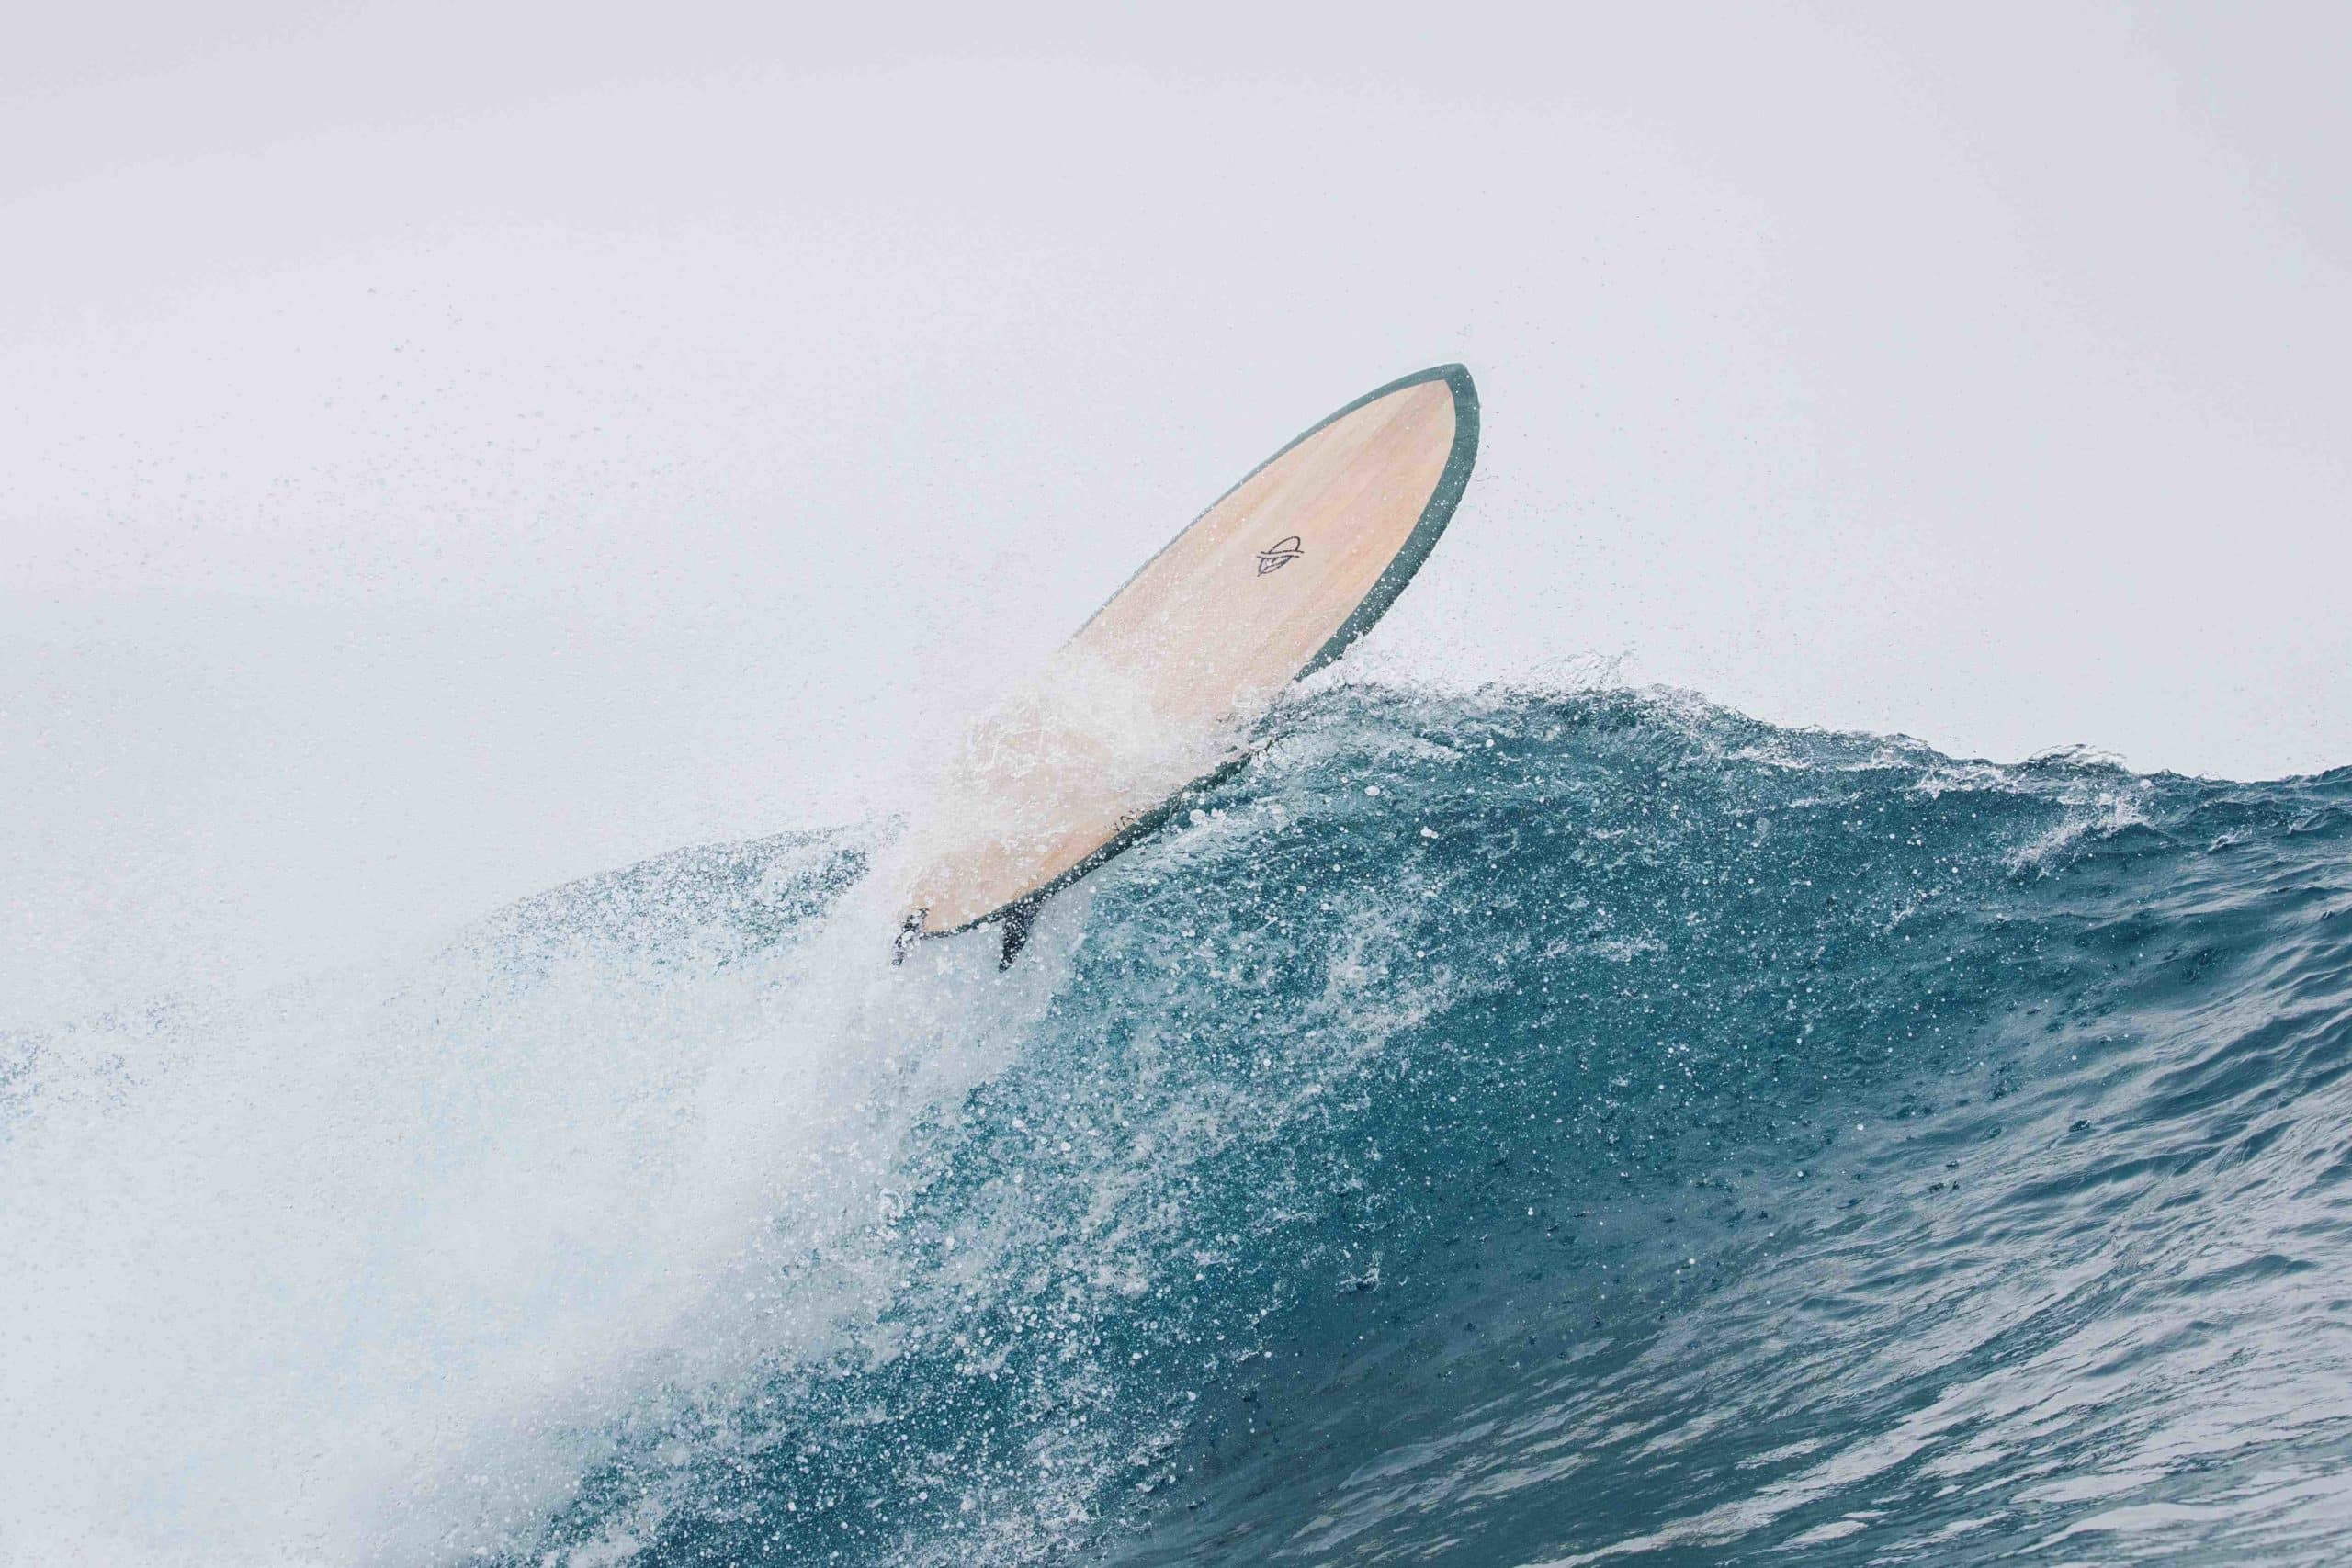 Comment lire taille surf ?